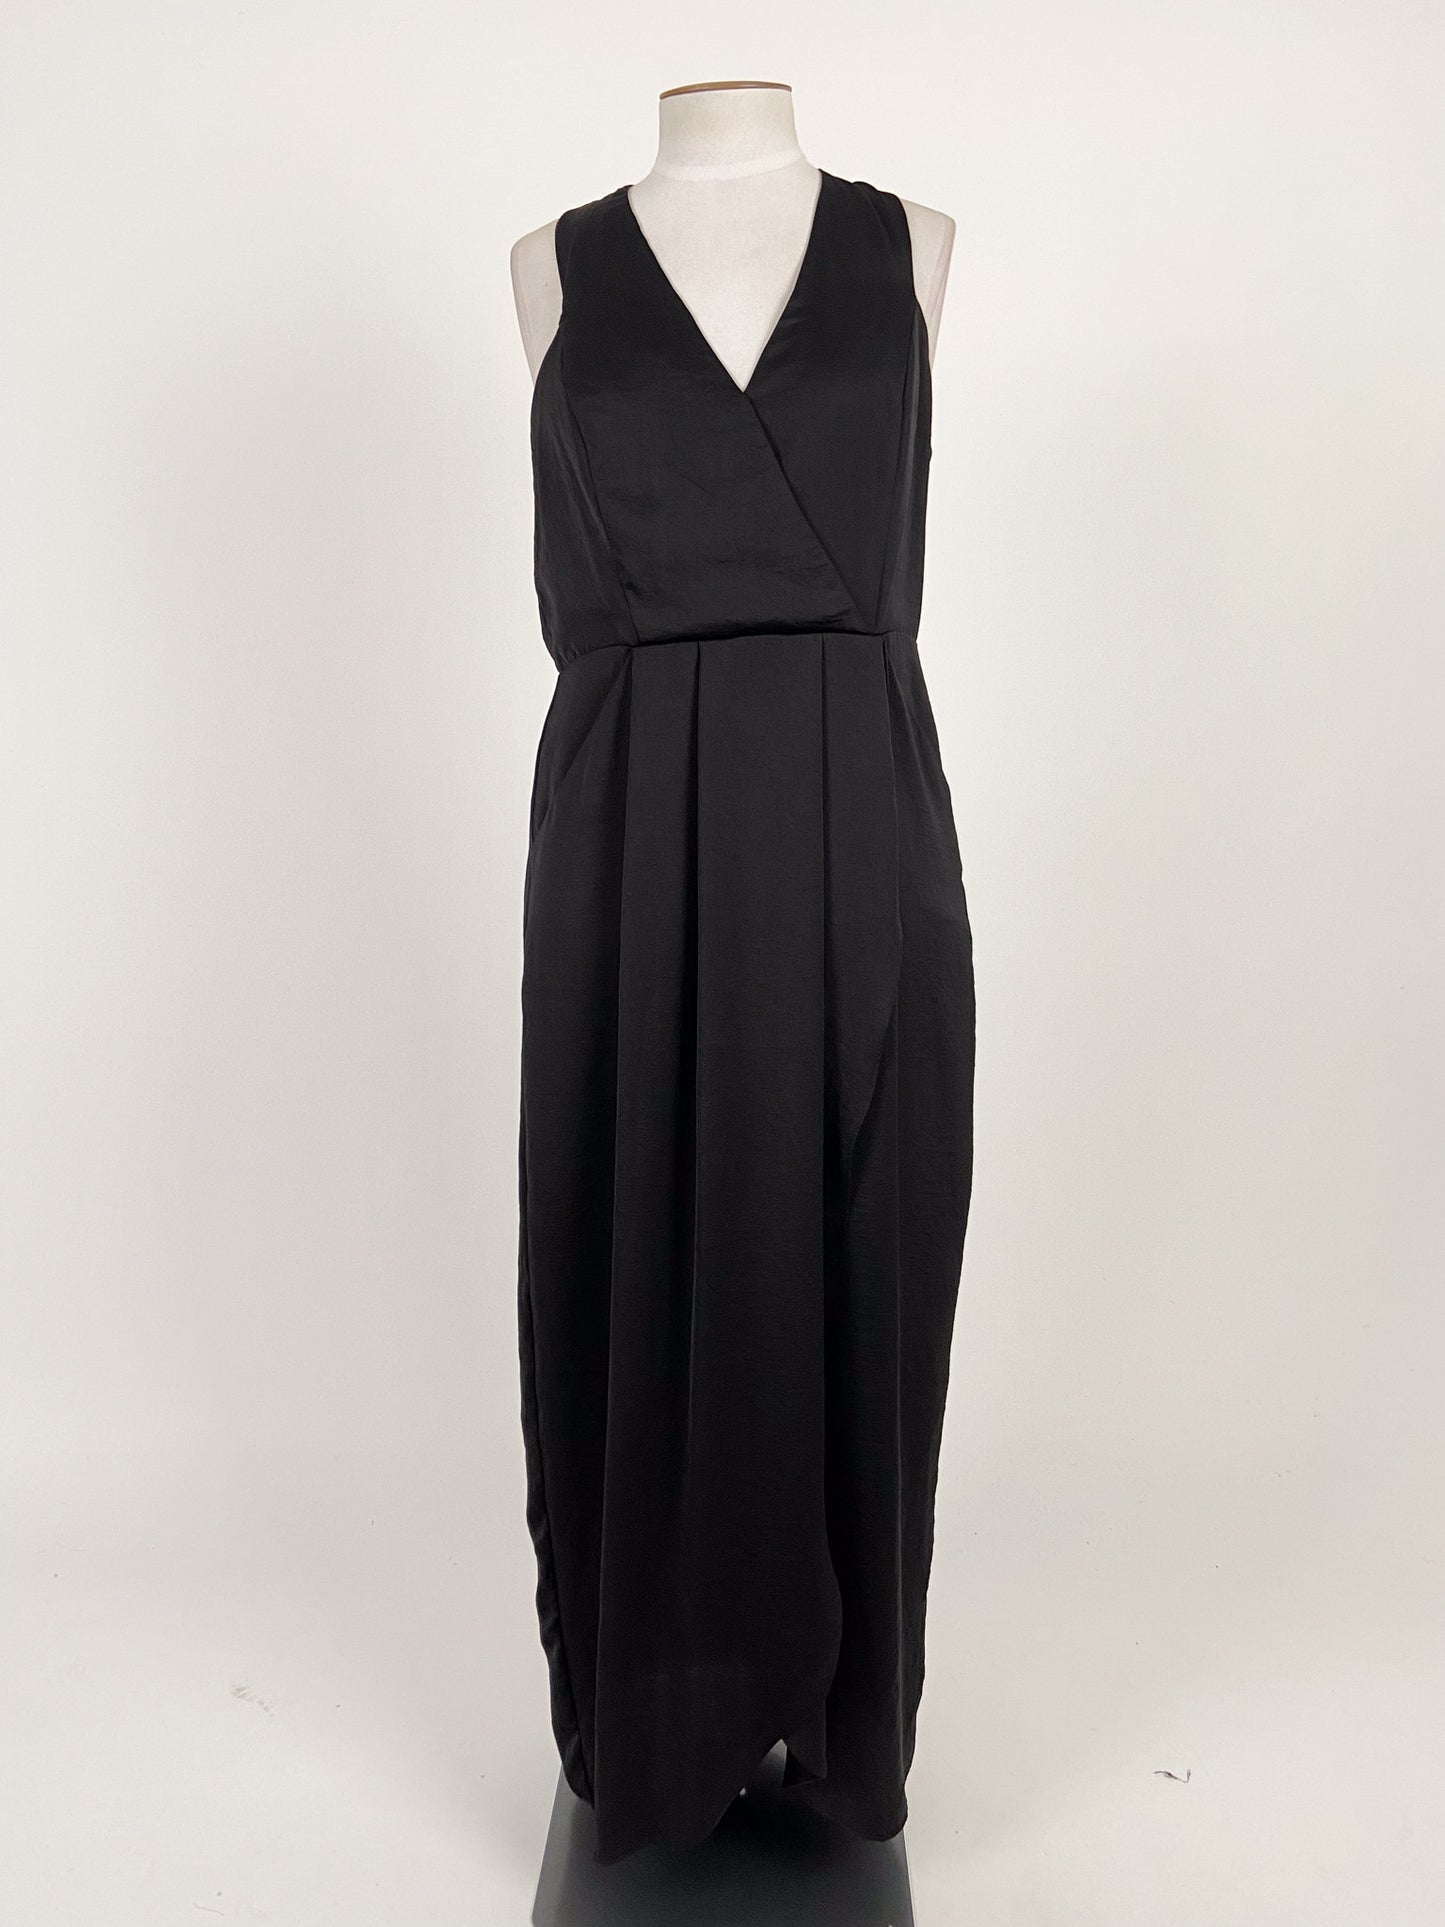 Portmans | Black Cocktail/Formal Dress | Size 14